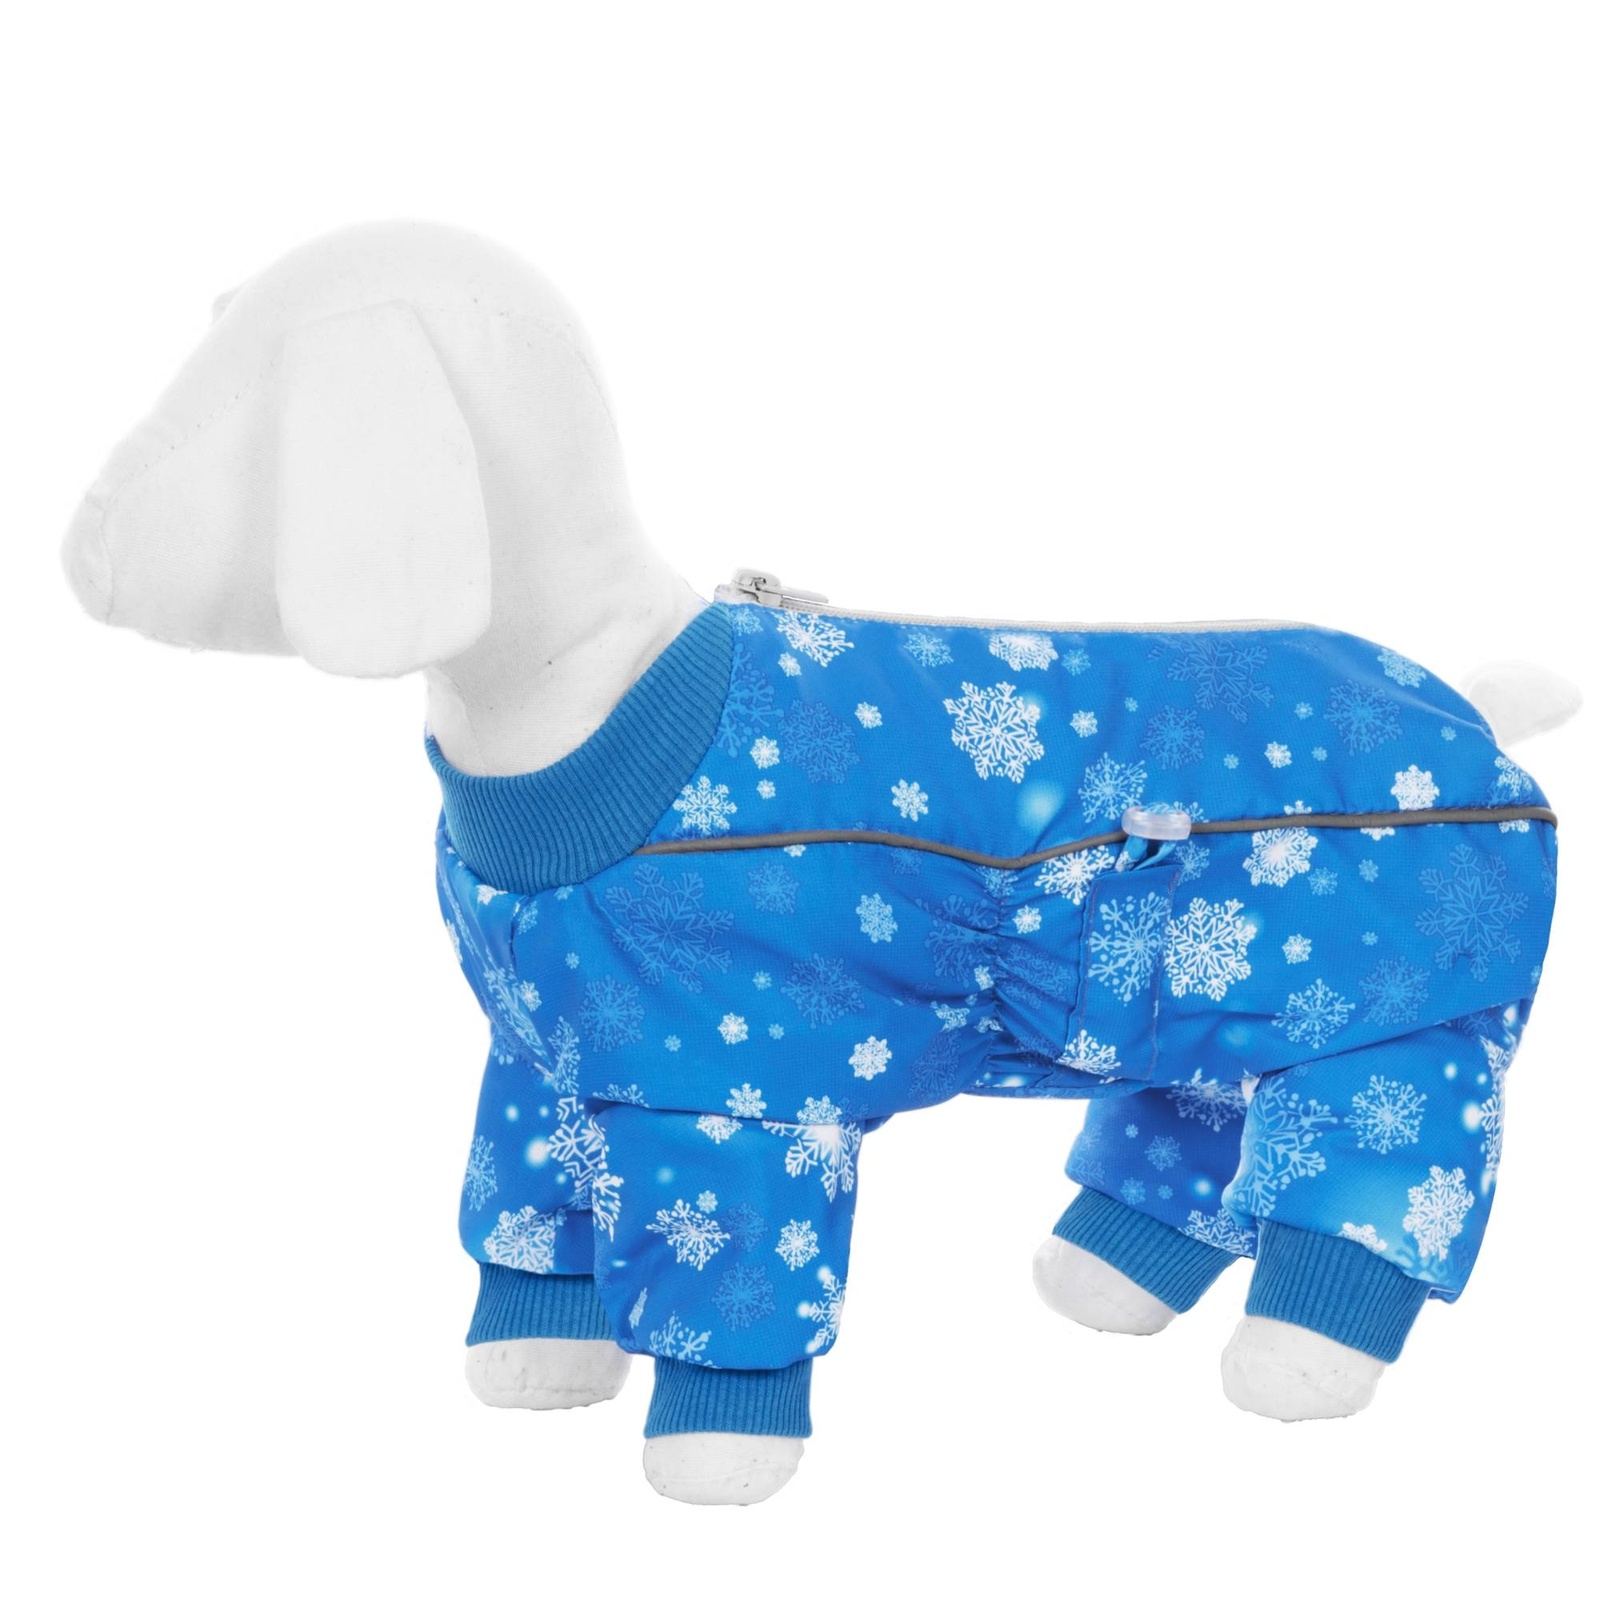 Yami-Yami одежда Yami-Yami одежда комбинезон для собак малых пород, на меху с рисунком снежинки (L) yami yami одежда yami yami одежда комбинезон для собак малых пород на меху с рисунком снежинки m